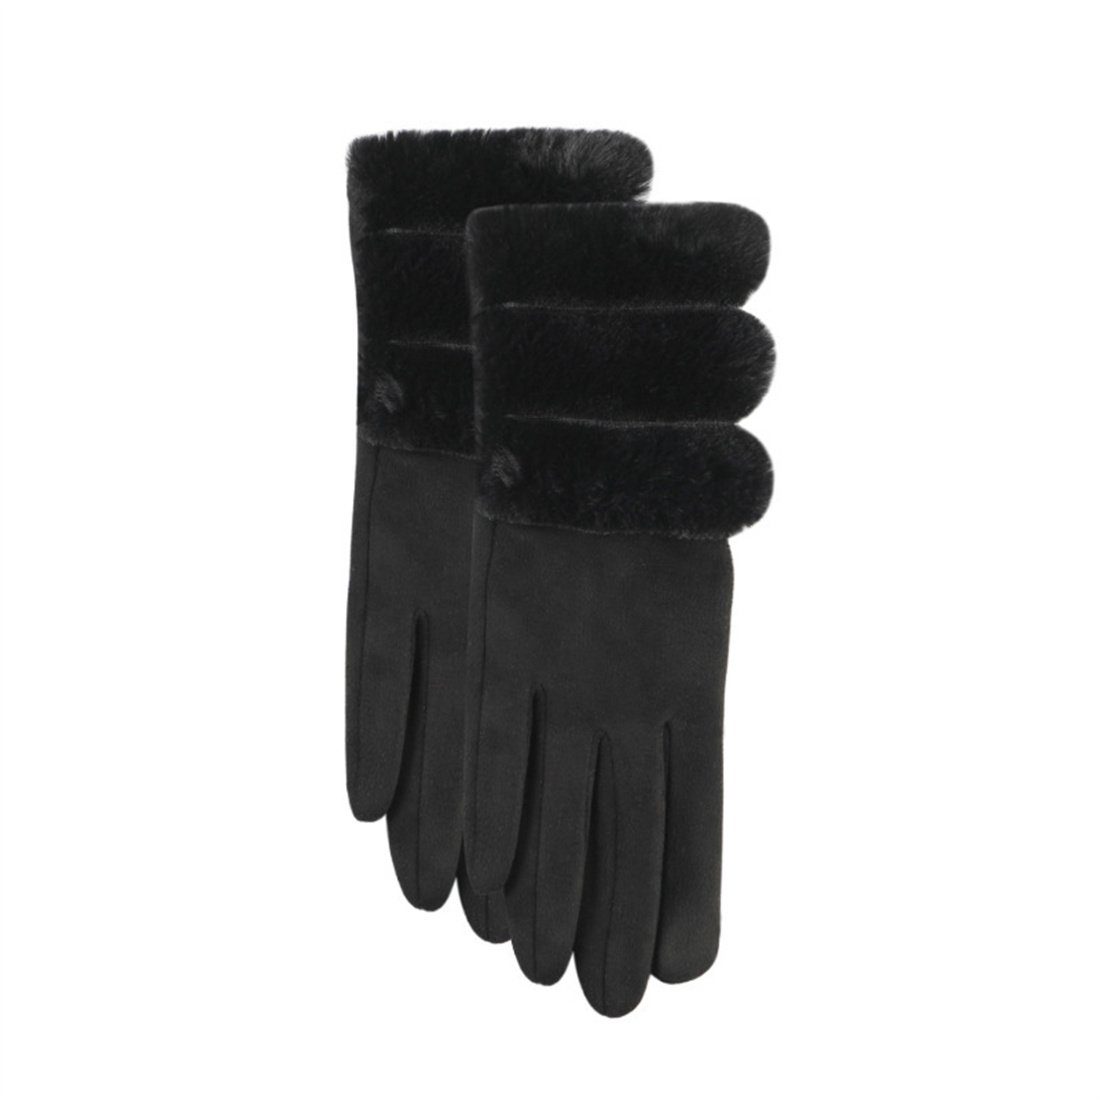 Handschuhe, Warme Verdickter Schwarz Damenmode Handschuhe Fleecehandschuhe DÖRÖY Reiten Plüsch